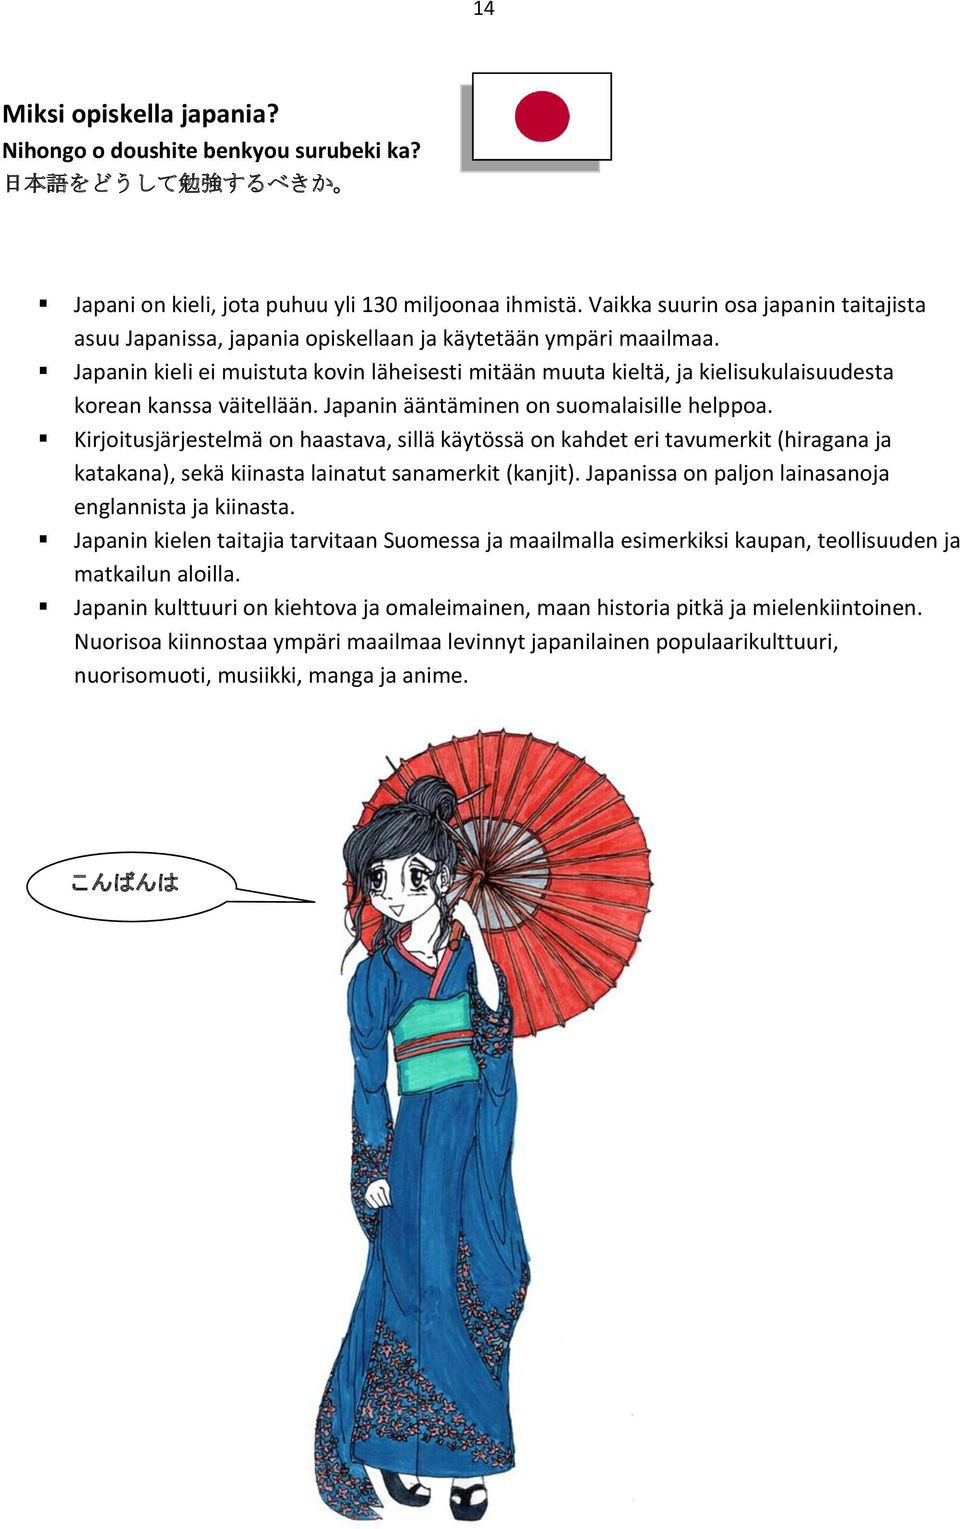 Japanin kieli ei muistuta kovin läheisesti mitään muuta kieltä, ja kielisukulaisuudesta korean kanssa väitellään. Japanin ääntäminen on suomalaisille helppoa.